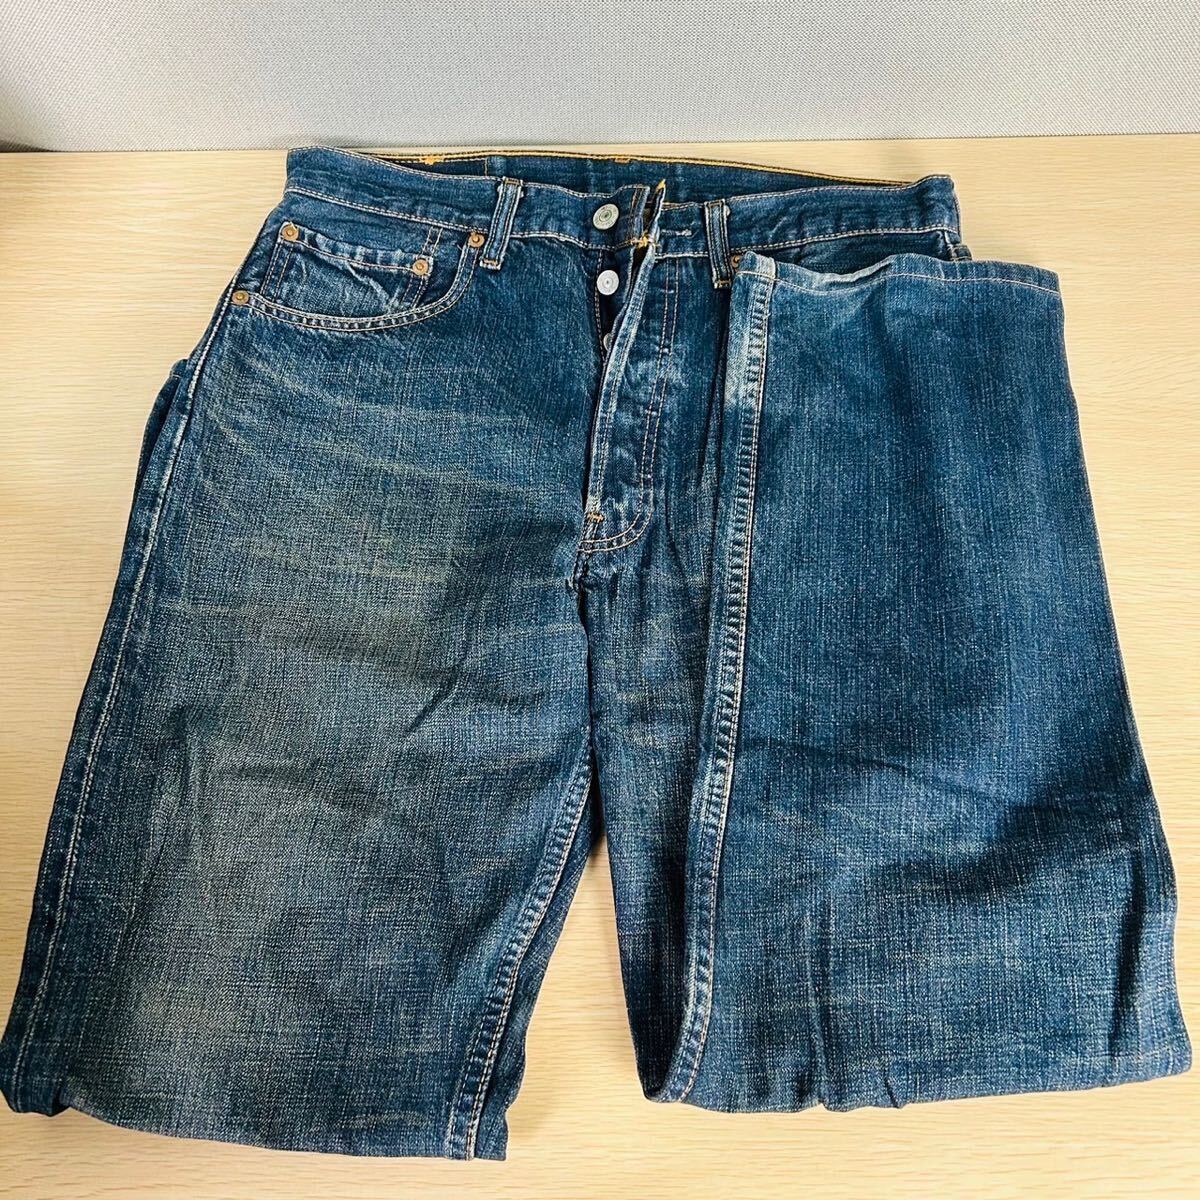 * Philippines made Levis Levi's 501 Denim pants jeans 501-01 W31L3 flat putting waist 39.5cm dress length 98cm waist 28.5cm